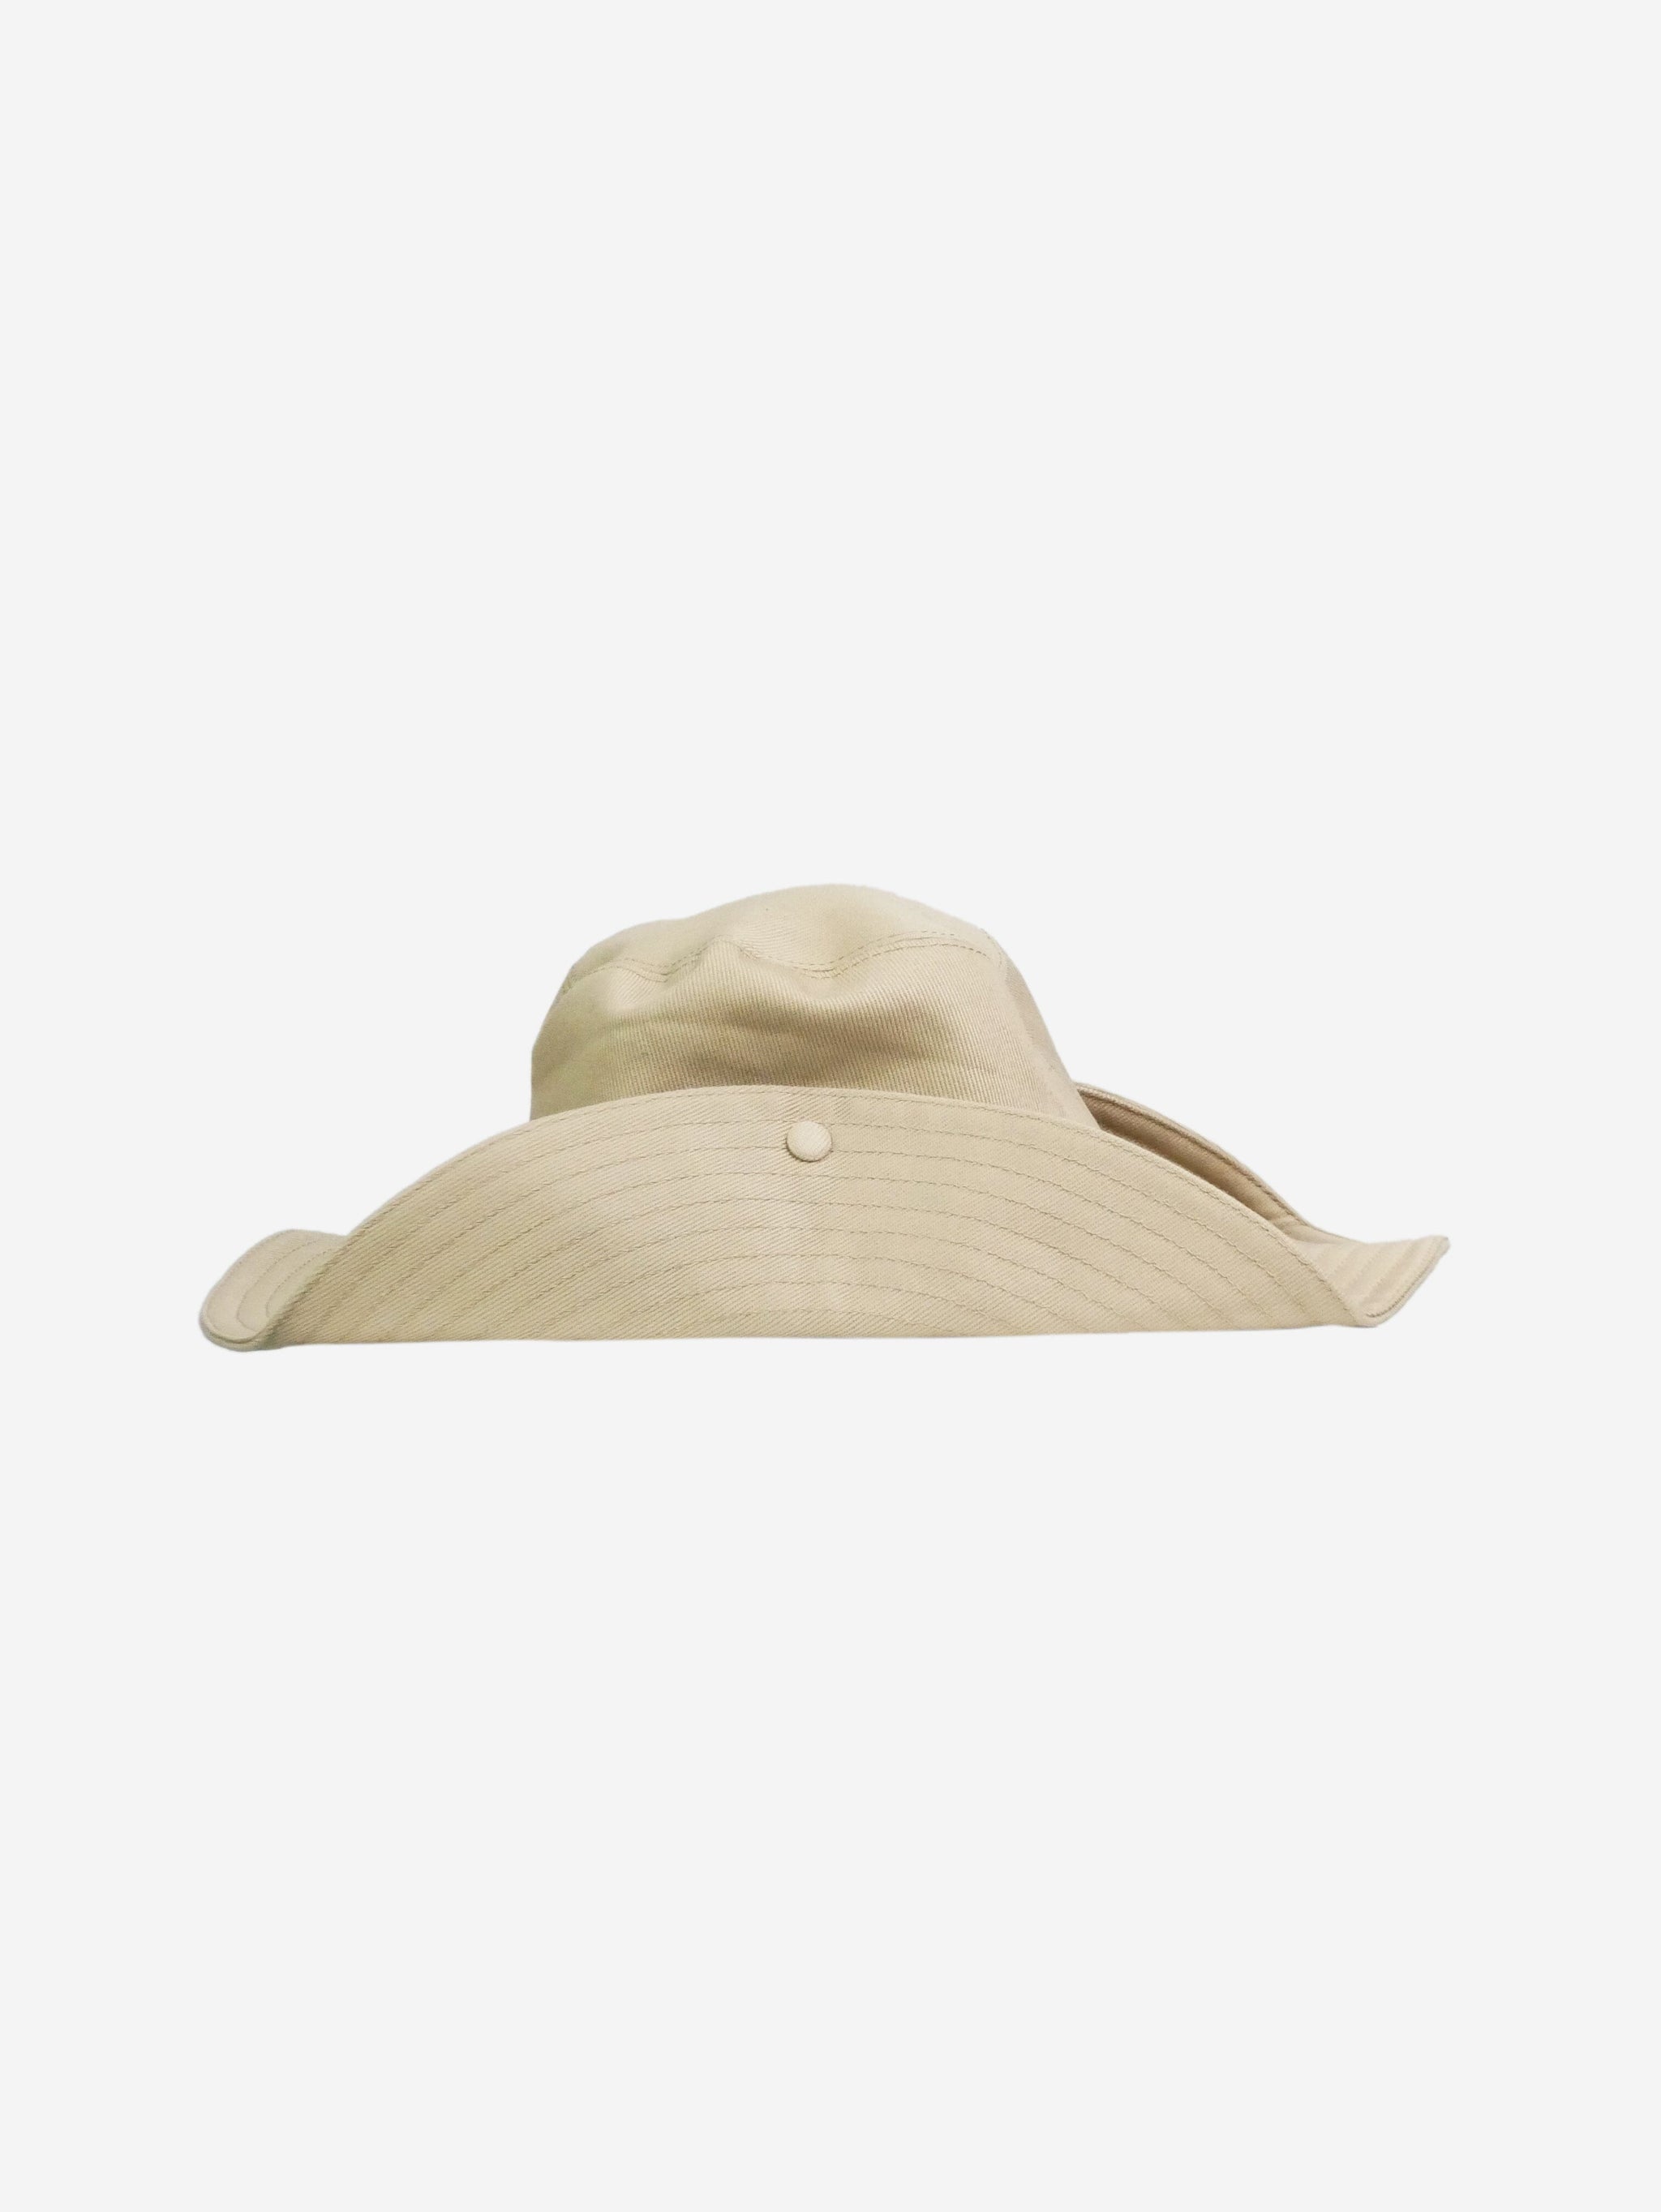 Miu Miu pre-owned beige denim logo hat | Sign of the Times